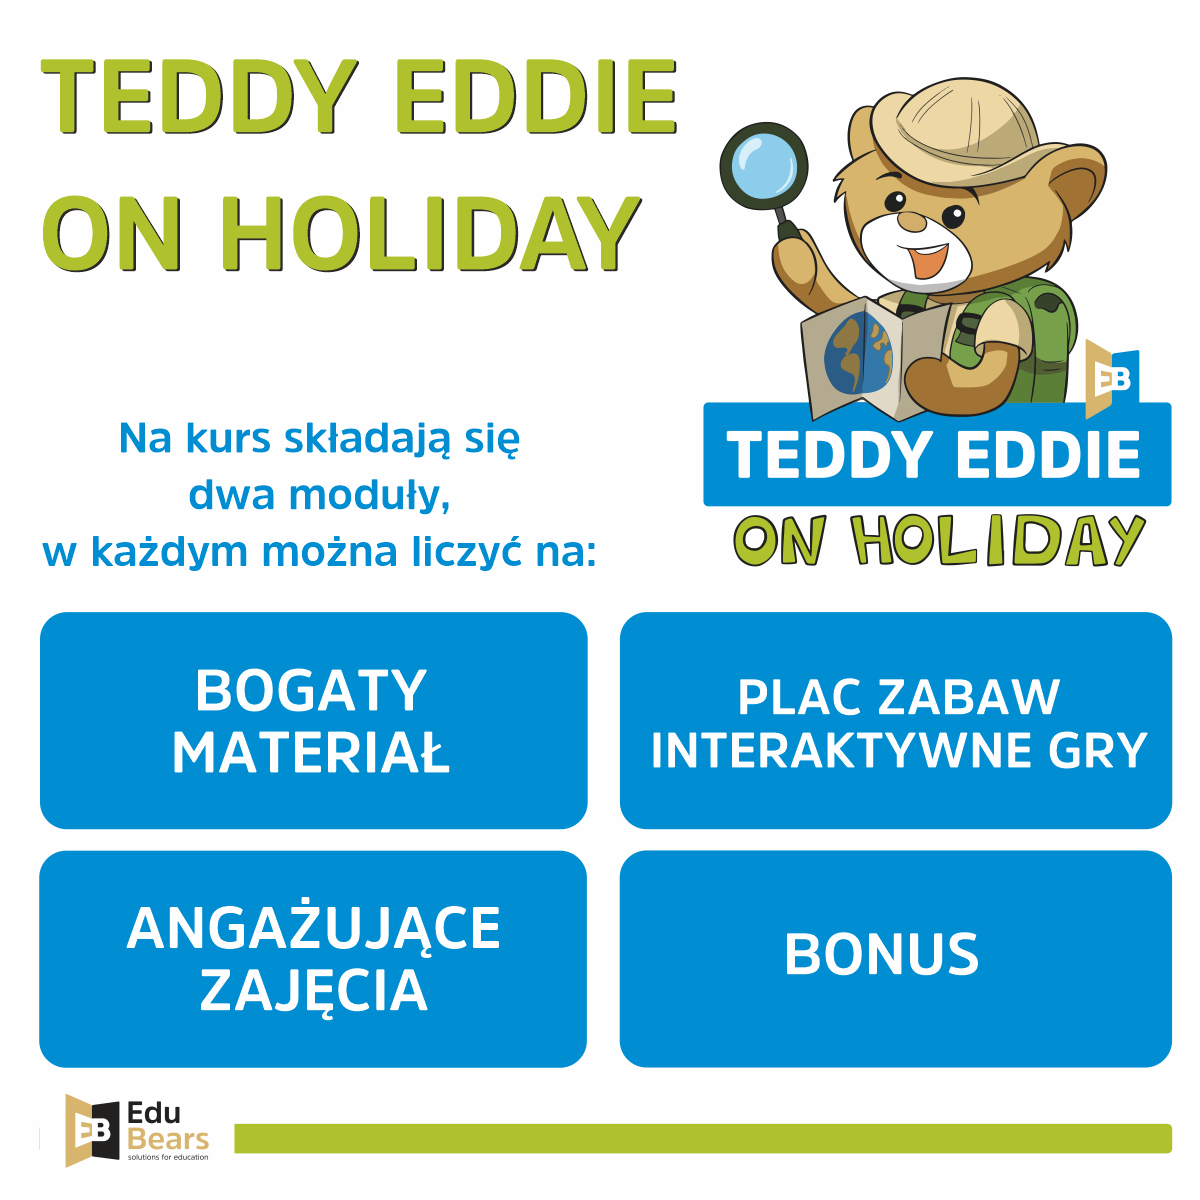 Teddy Eddie on holiday